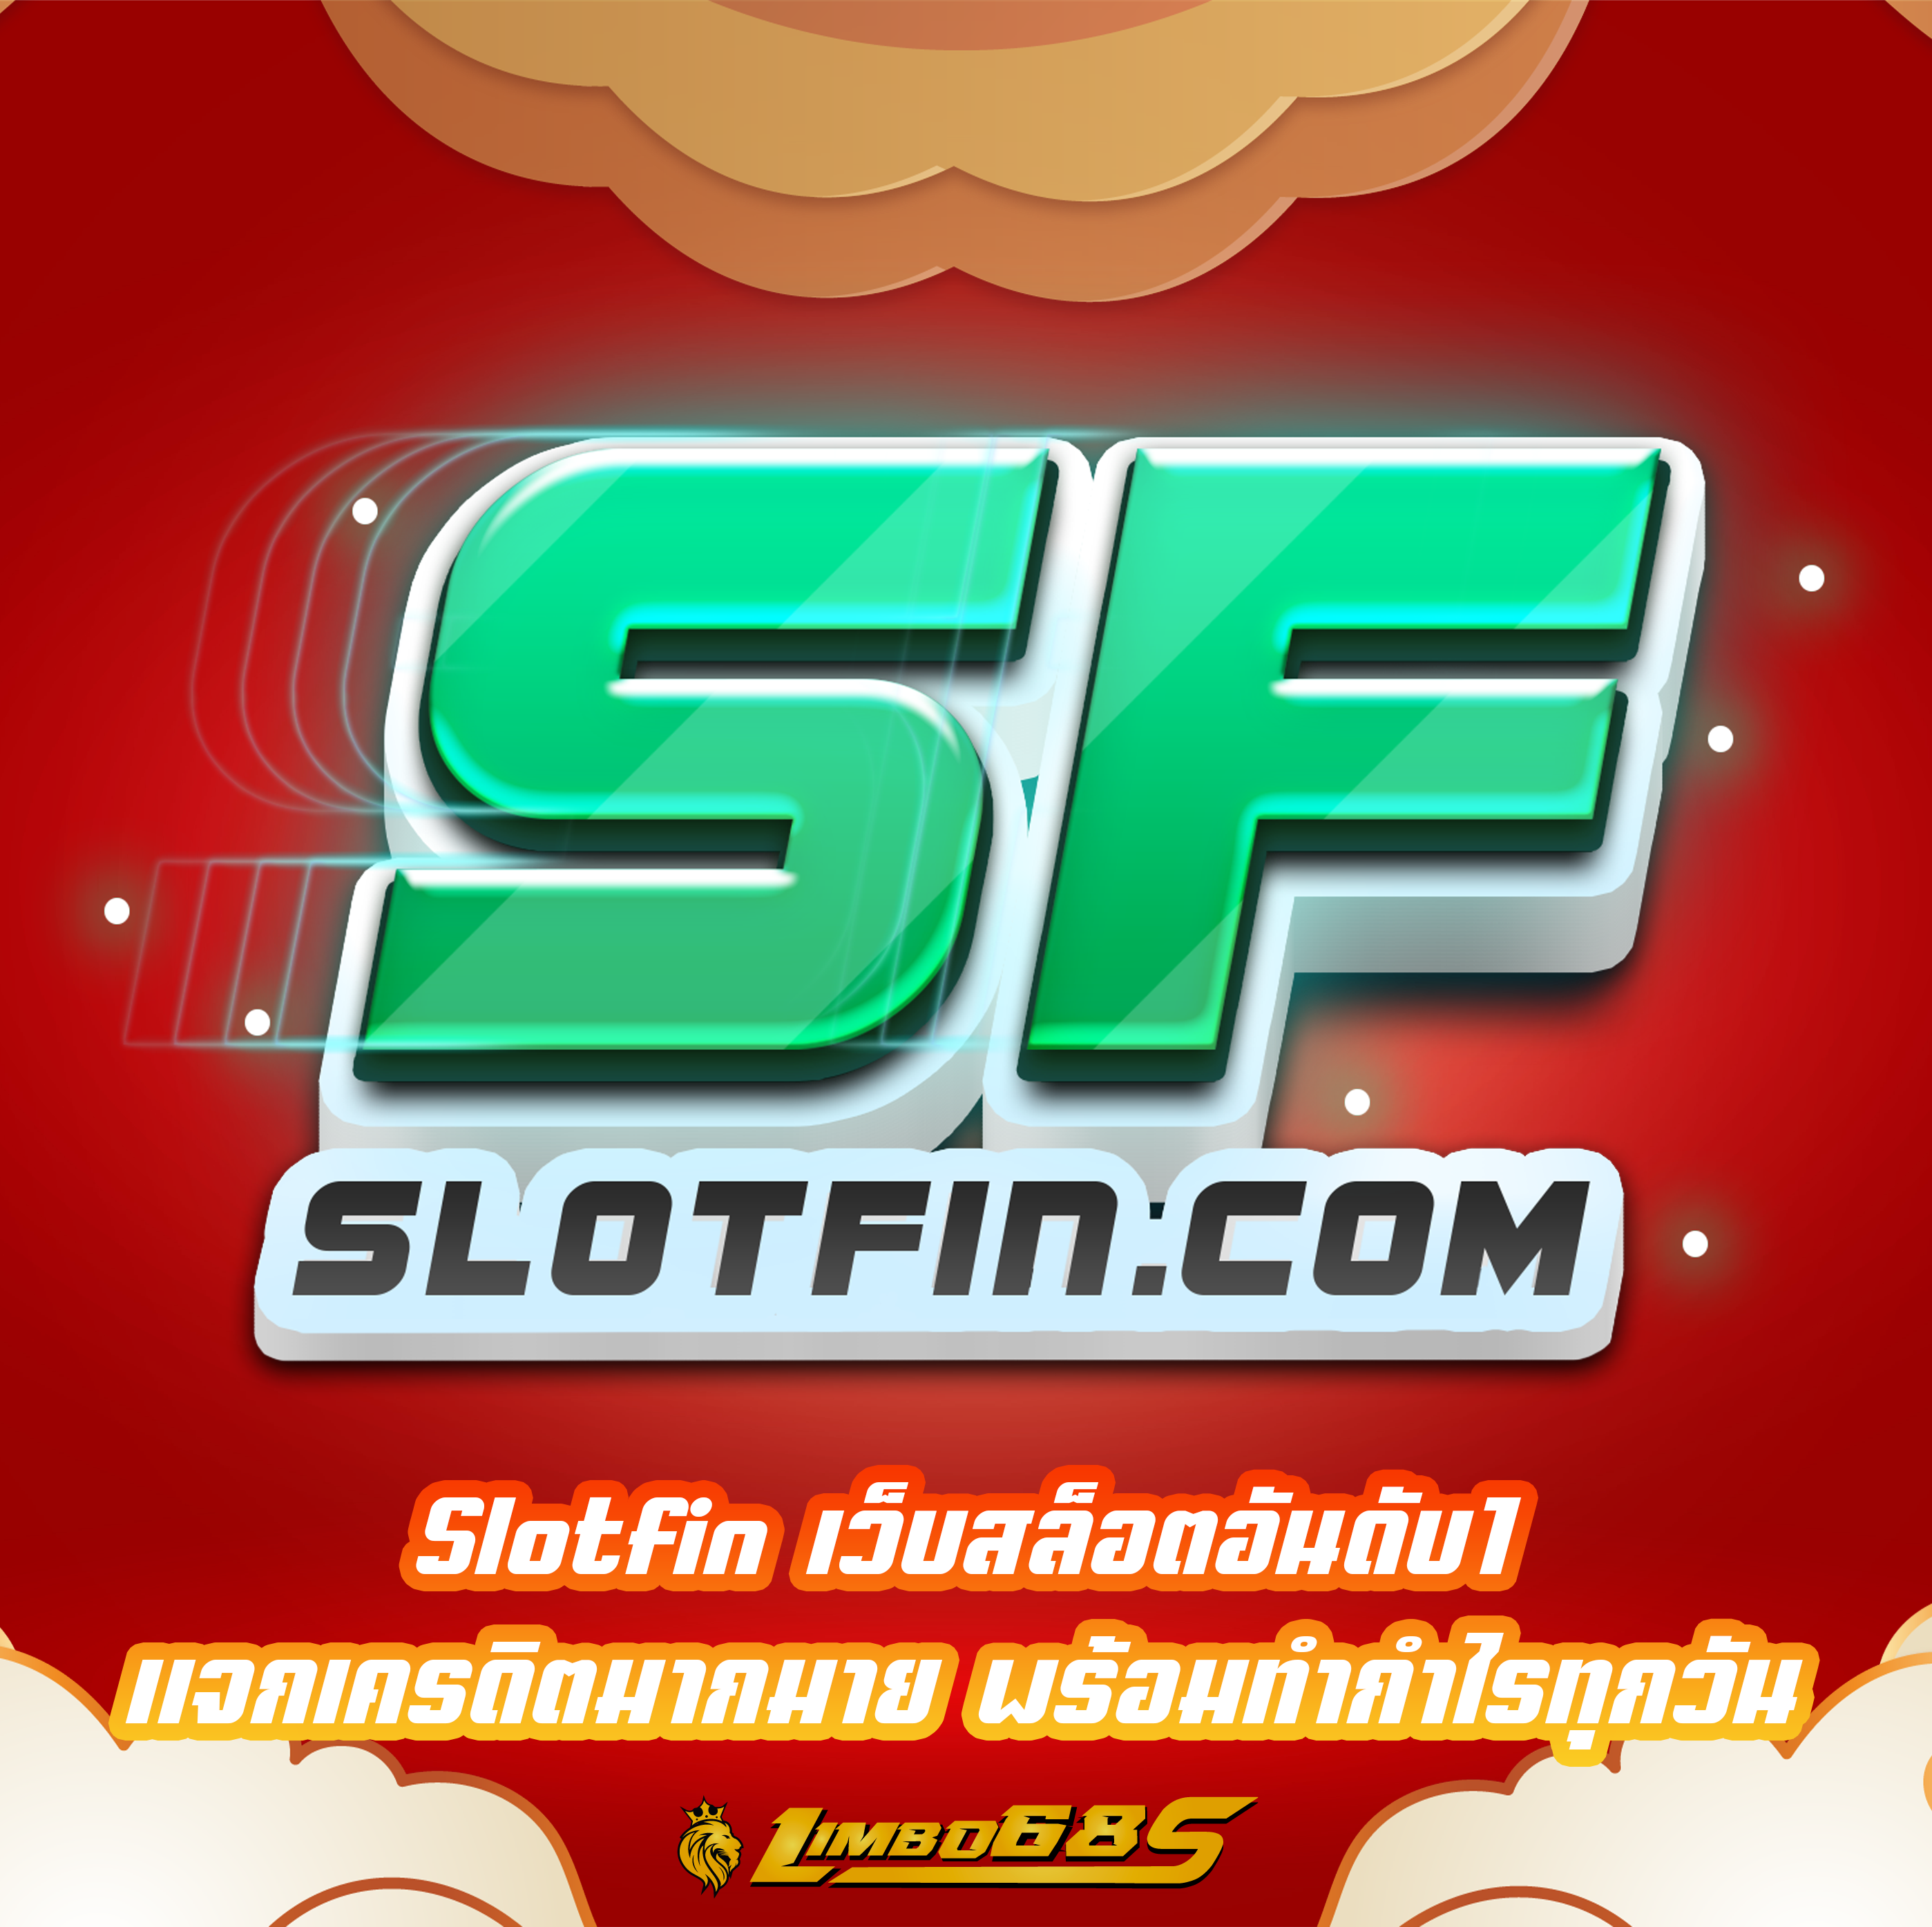 Slotfin เว็บสล็อตอันดับ1 แจกเครดิตมากมาย พร้อมทำกำไรทุกวัน